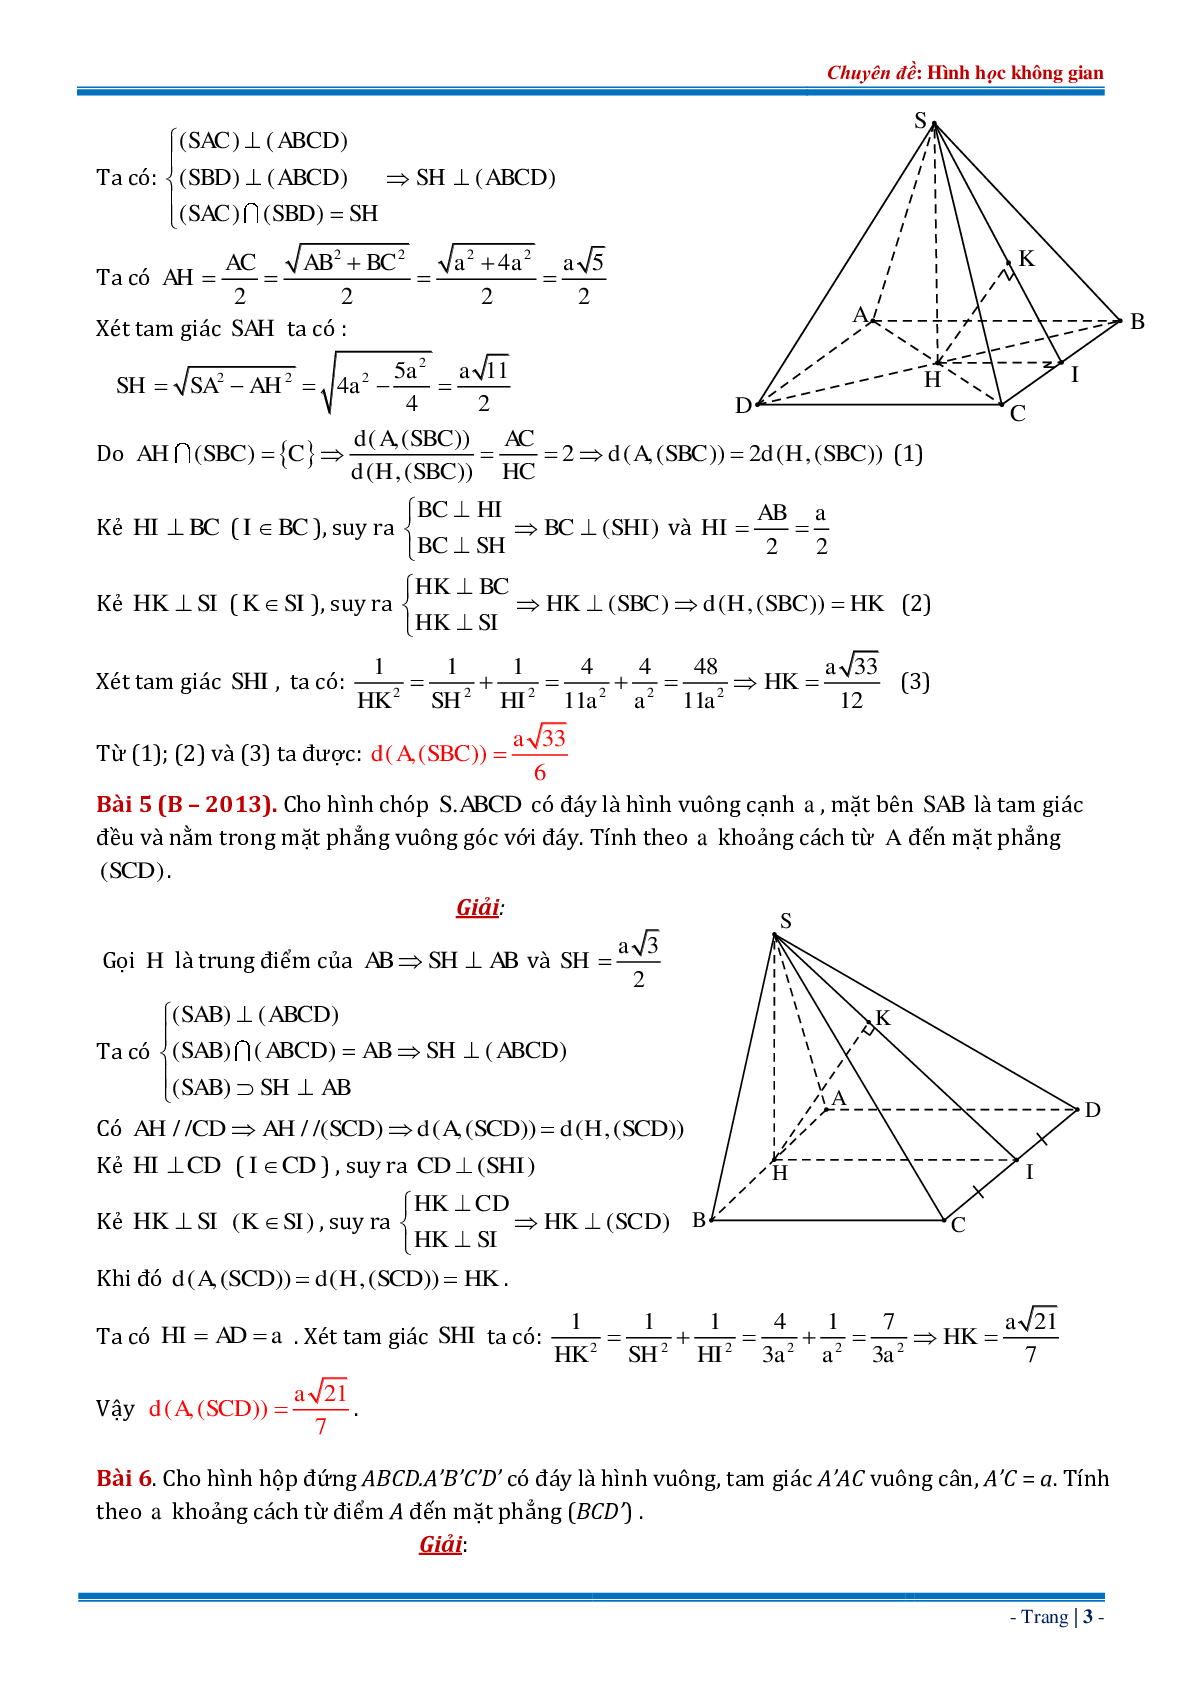 18 bài tập về khoảng cách từ điểm đến mặt phẳng dạng tổng hợp có đáp án chi tiết (trang 3)